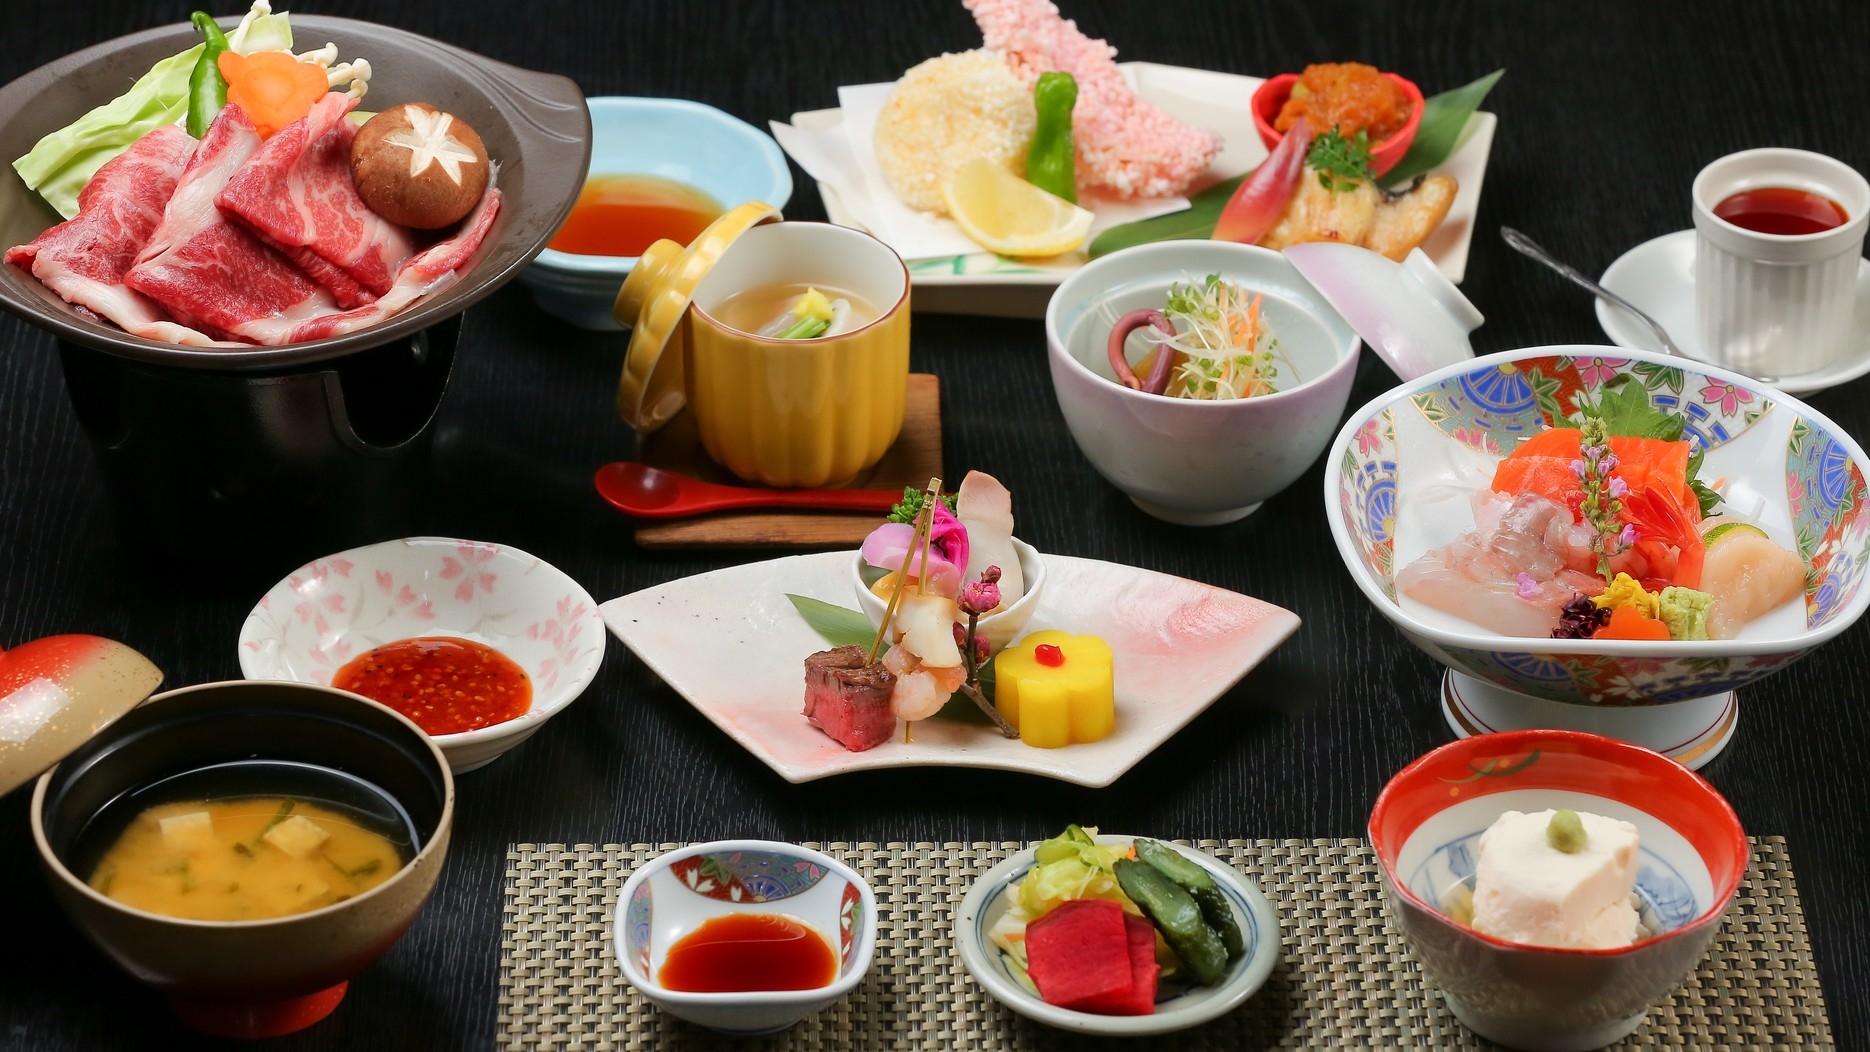 ■美味饗宴■『日本最高峰の皇帝牡蠣』+『にいがた和牛』+☆板長渾身☆至極の膳☆心ゆくまでご堪能下さい